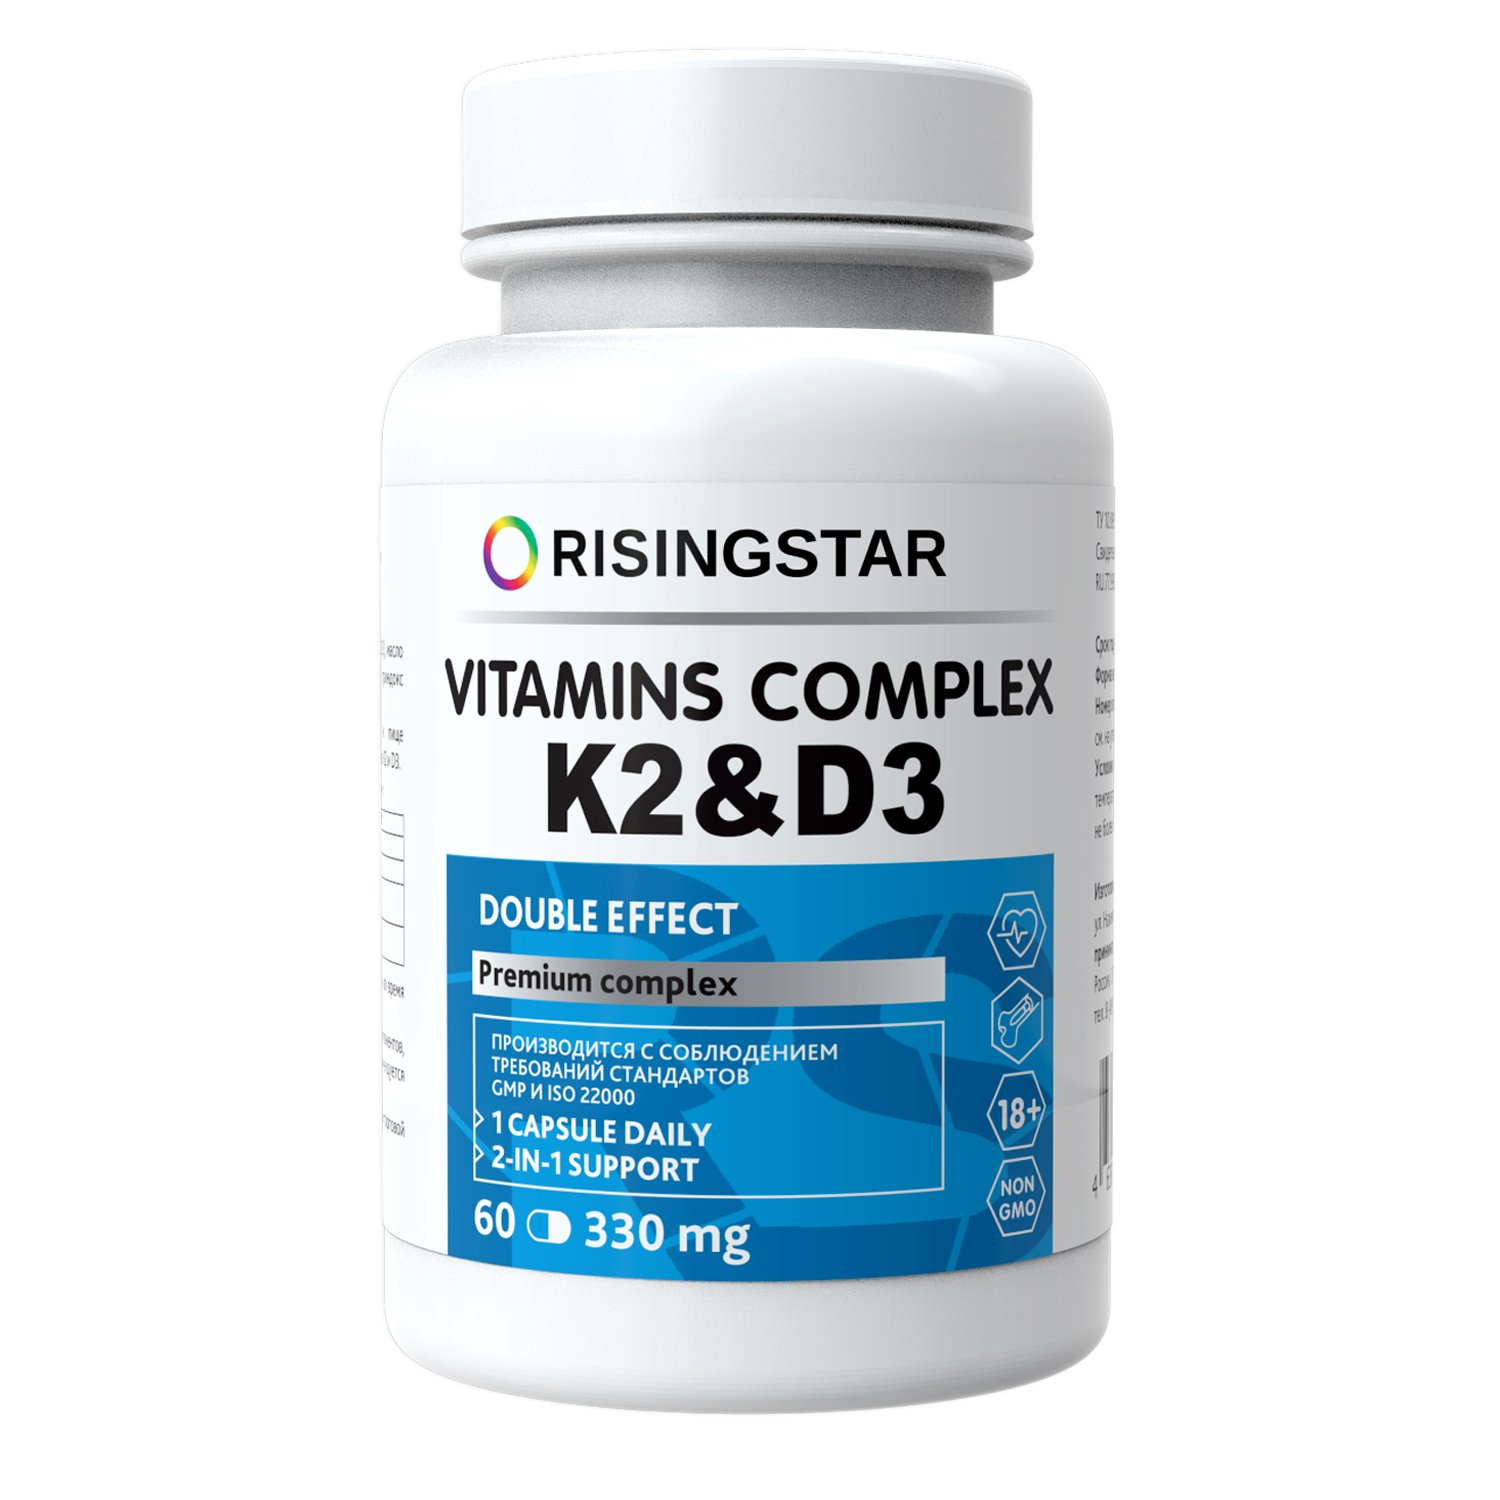 Комплекс витаминов K2 & D3 двойной эффект Risingstar, 60 кап. по 330 мг